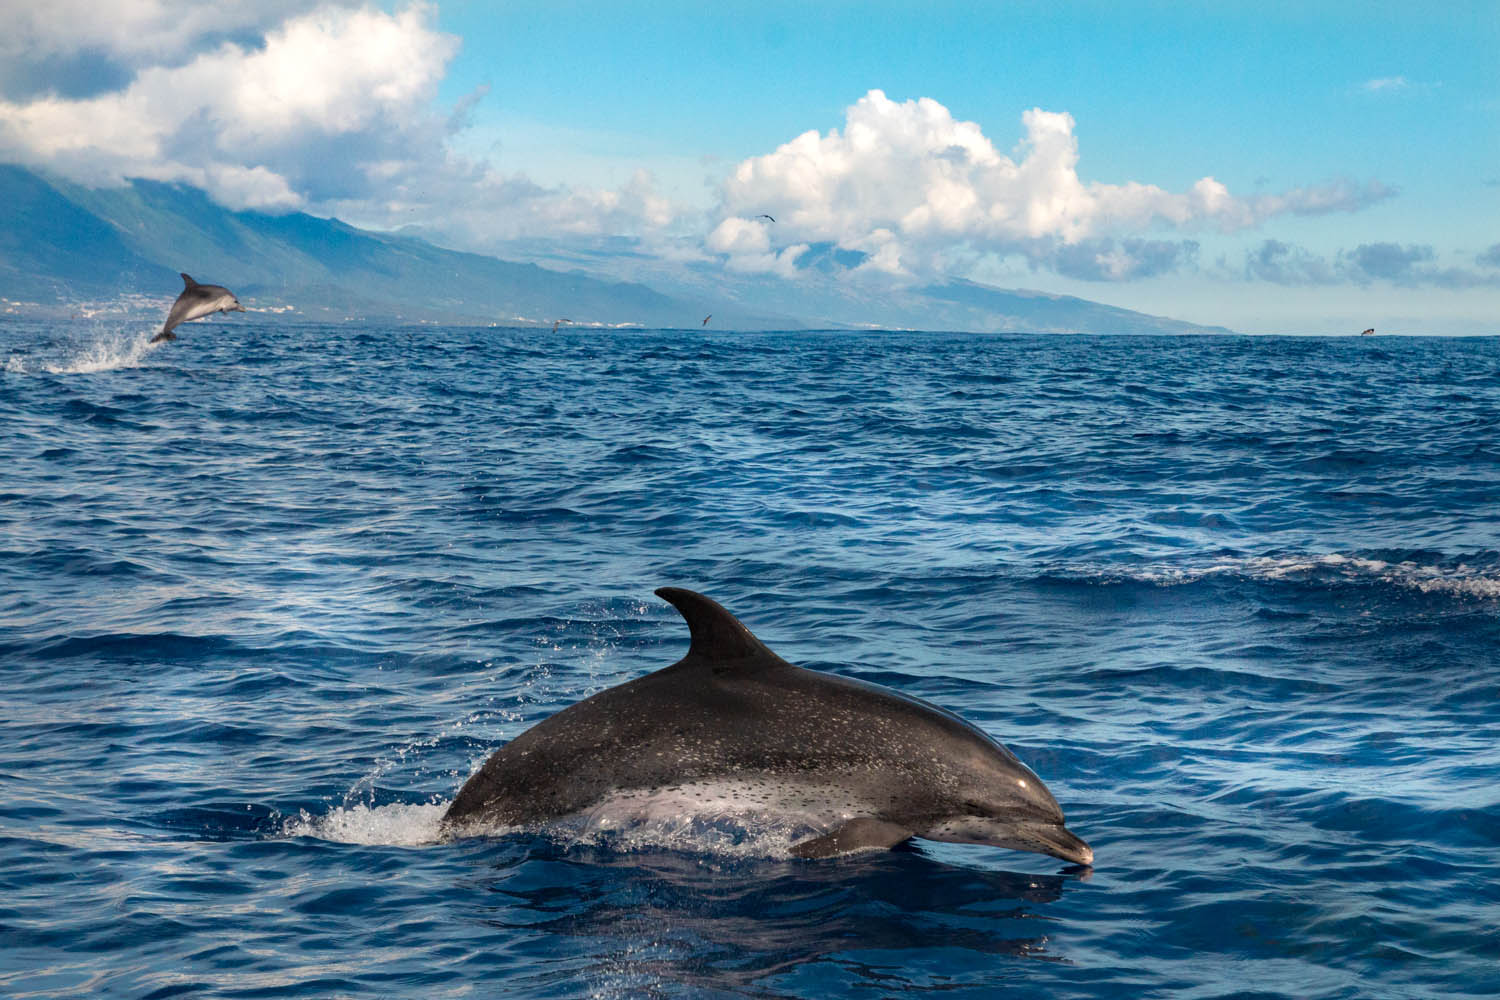 Voyage naturaliste - les cétacés et oiseaux marins des Açores. Dauphin tacheté © Stéphanie Vigetta -Wild Seas Explorer